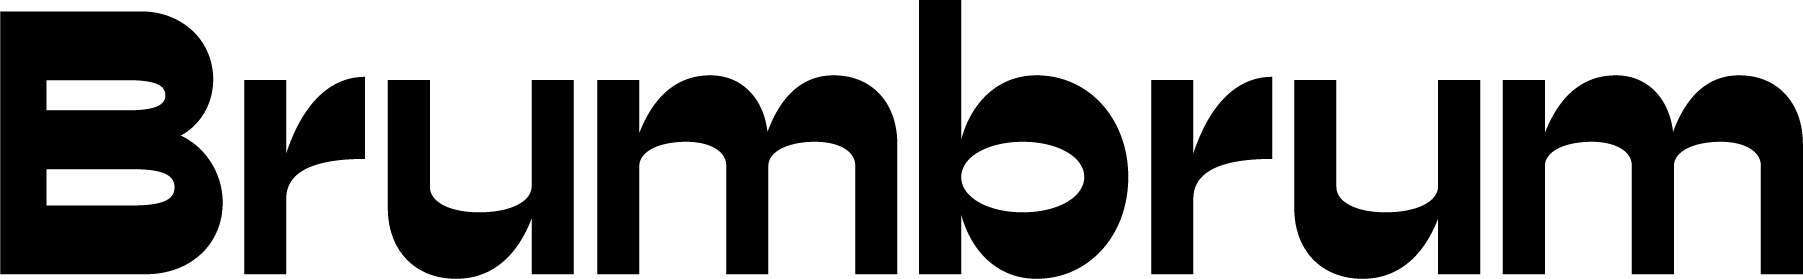 Brum brum logo